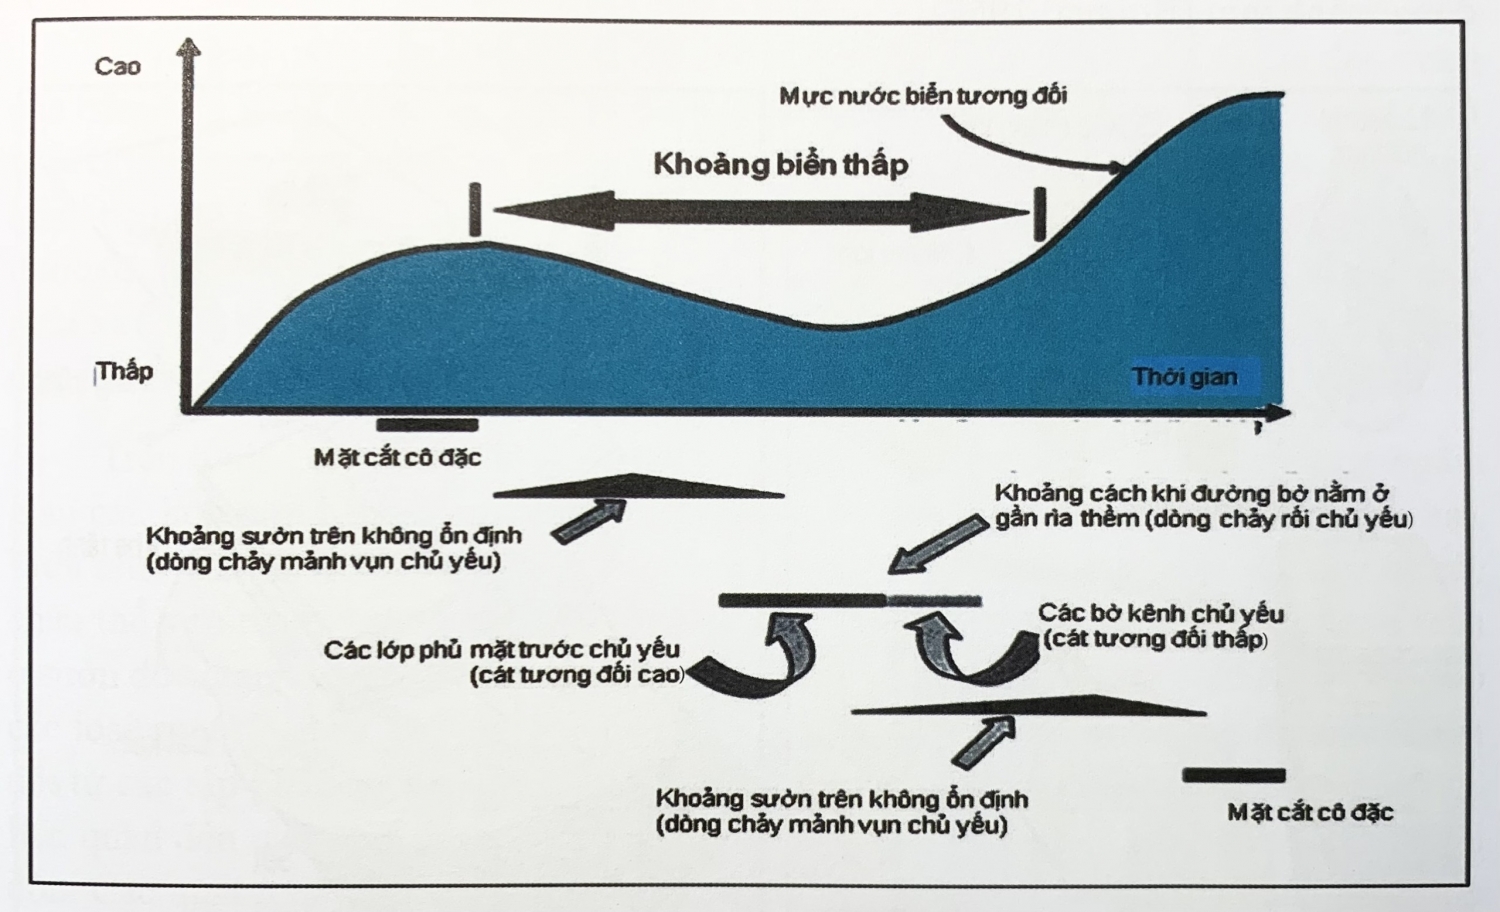 Quá trình trầm tích vùng biển nước sâu